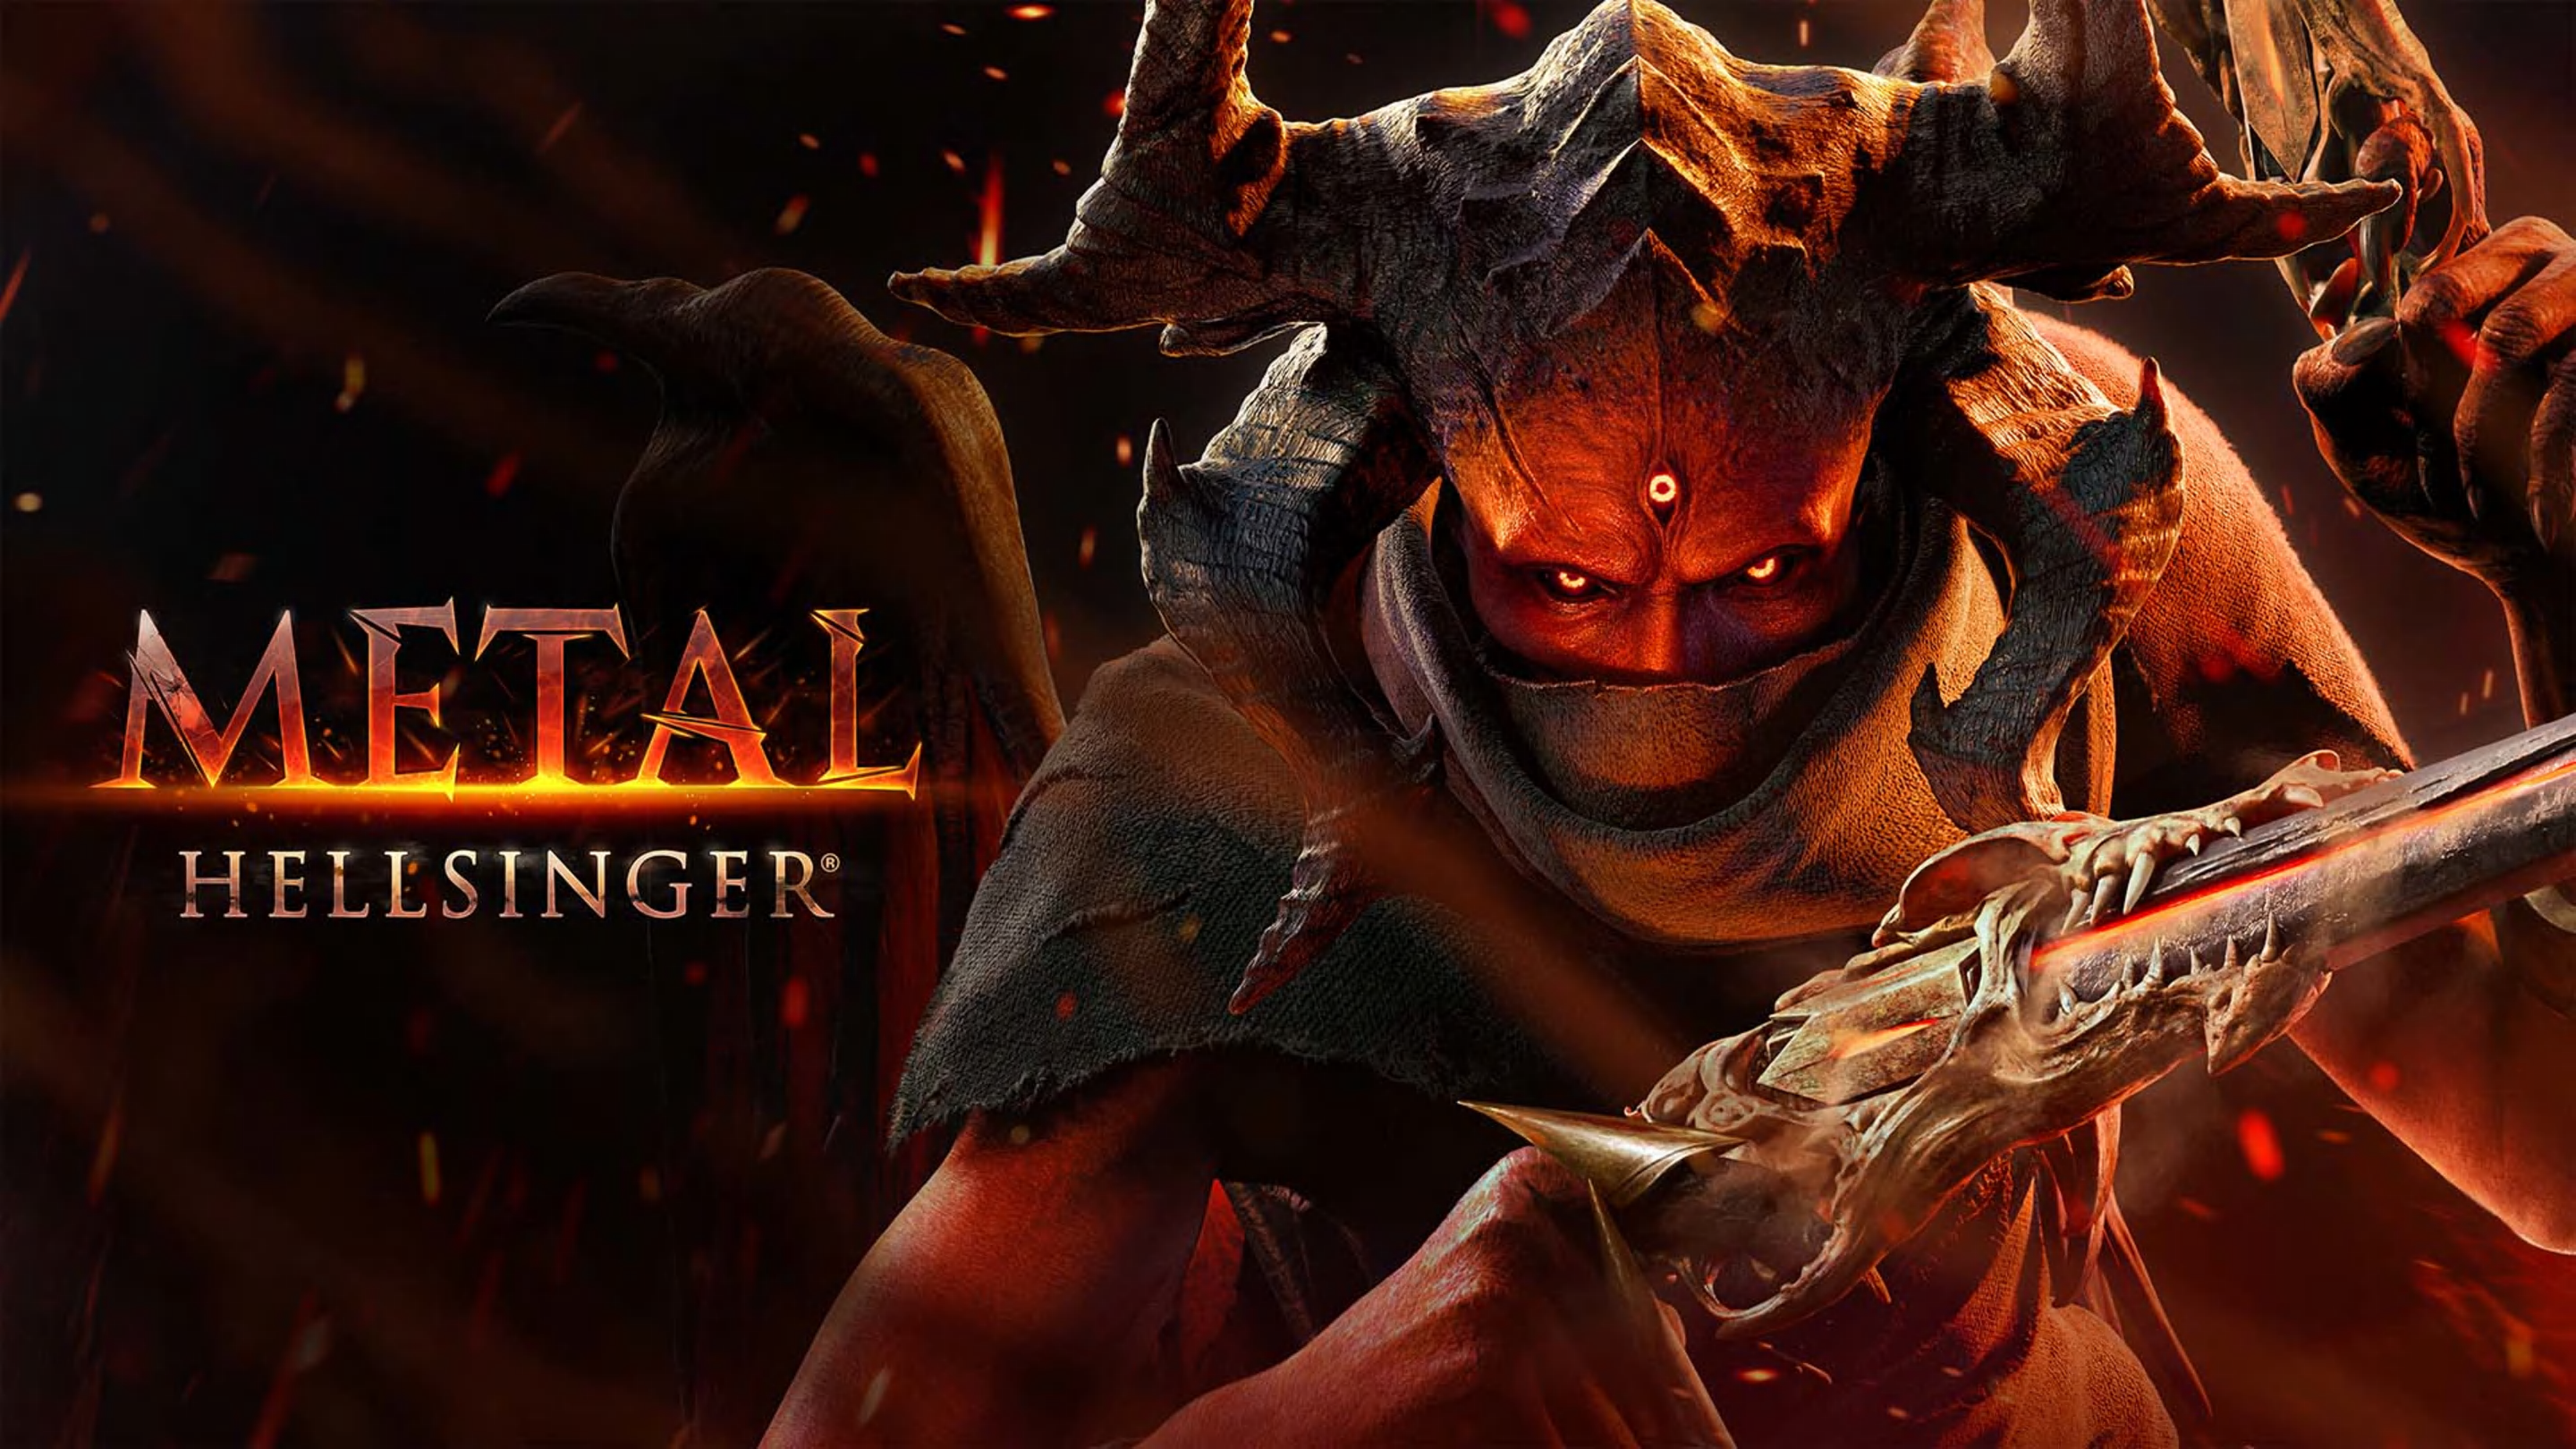 Metal: Hellsinger gets mod support on PC